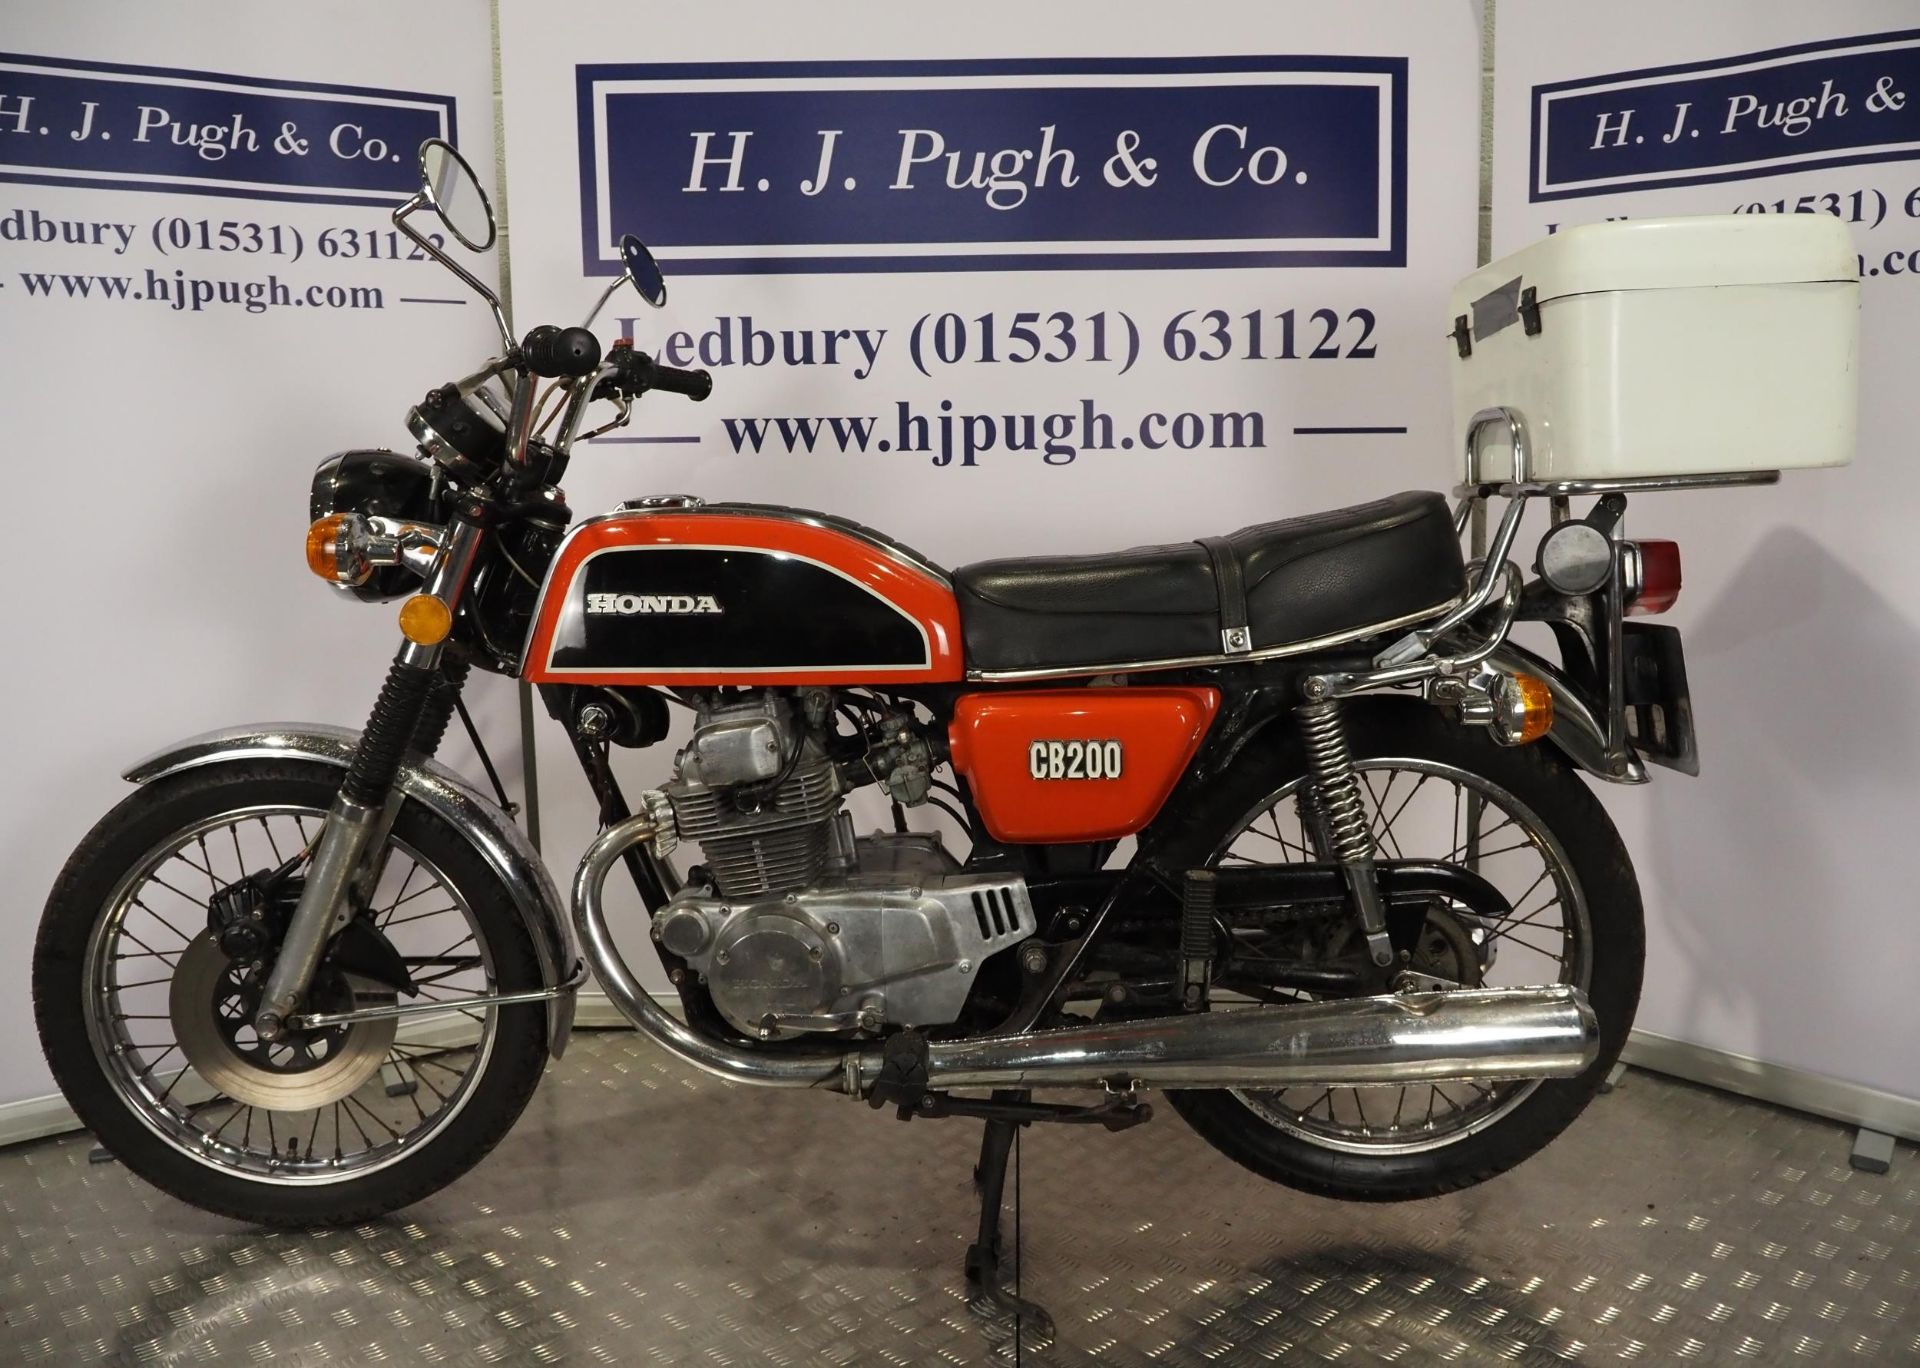 Honda CB200 motorcycle. 1976. 198cc Frame No. CB200-1044060 Frame No. CB200E-1046364 UK supplied - Image 6 of 6